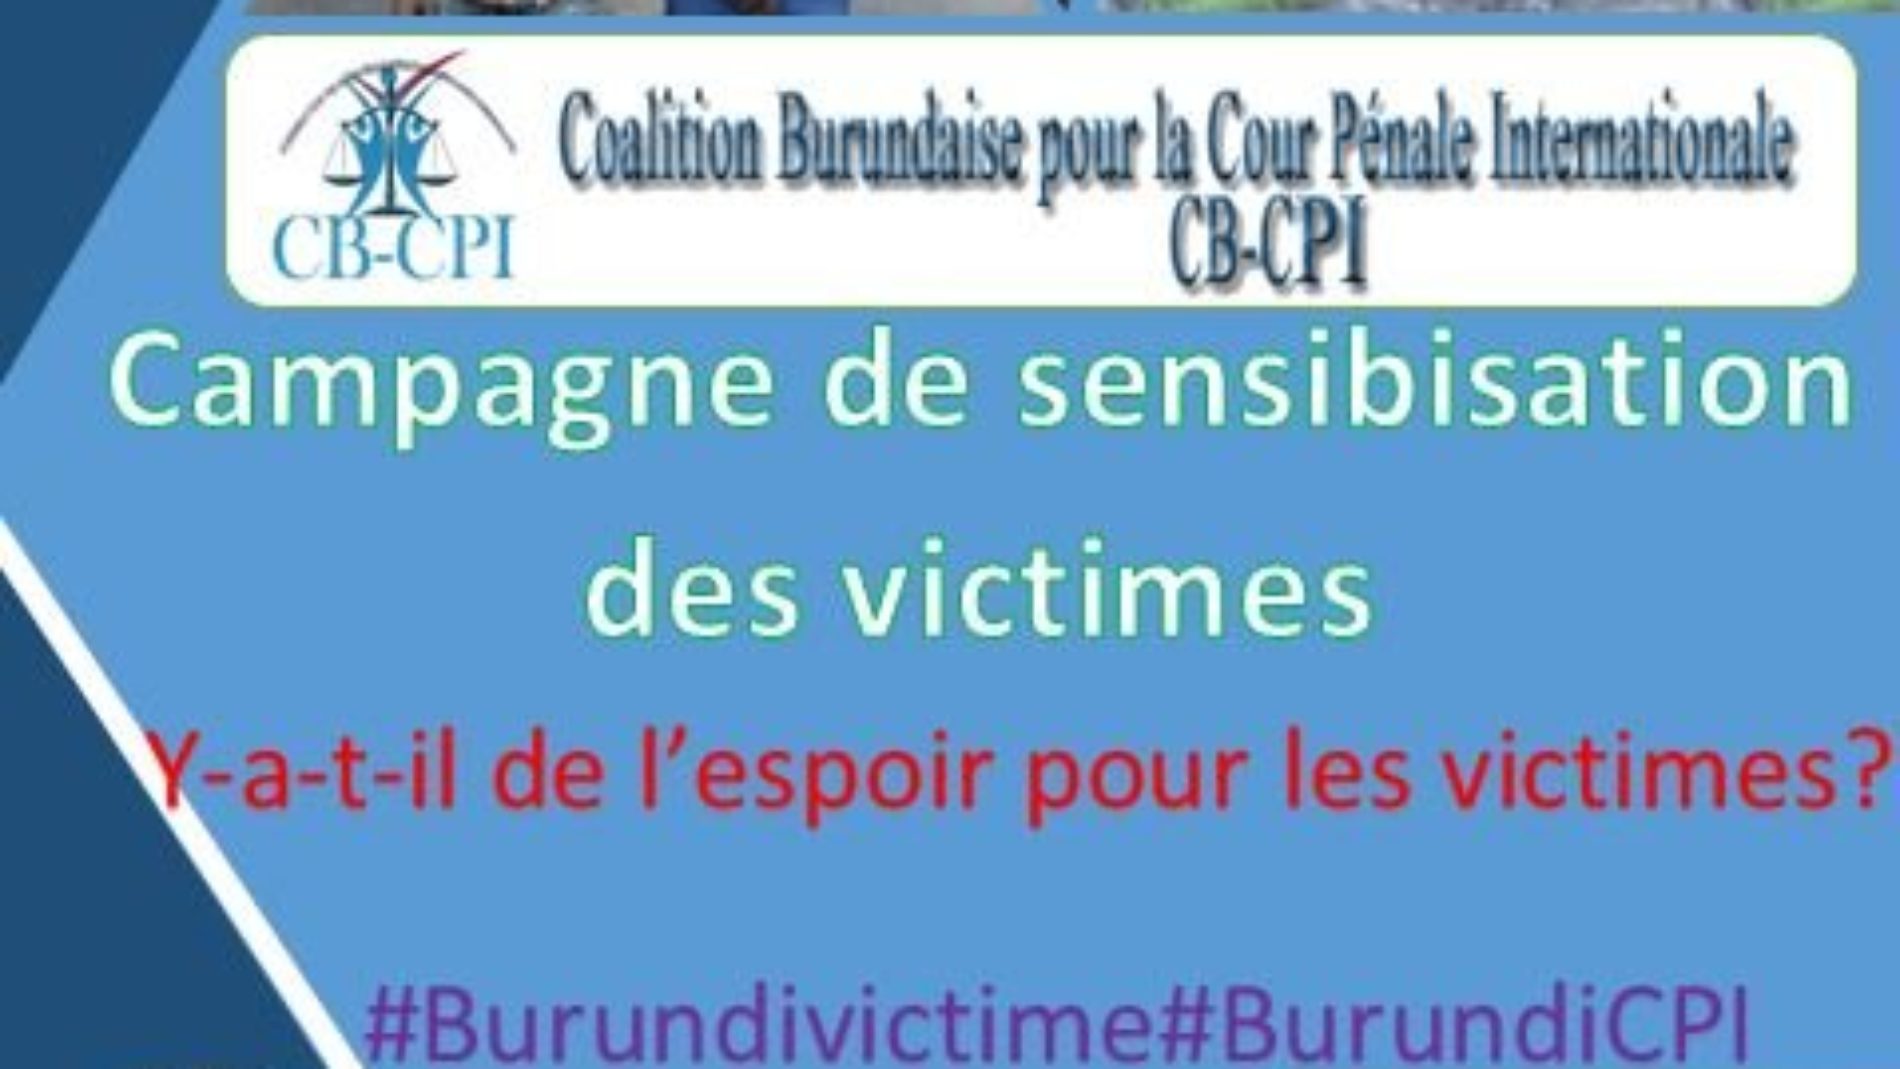 Burundi-CPI: La société civile et les journalistes main dans la main au chevet des victimes des crimes contre l’humanité au Burundi